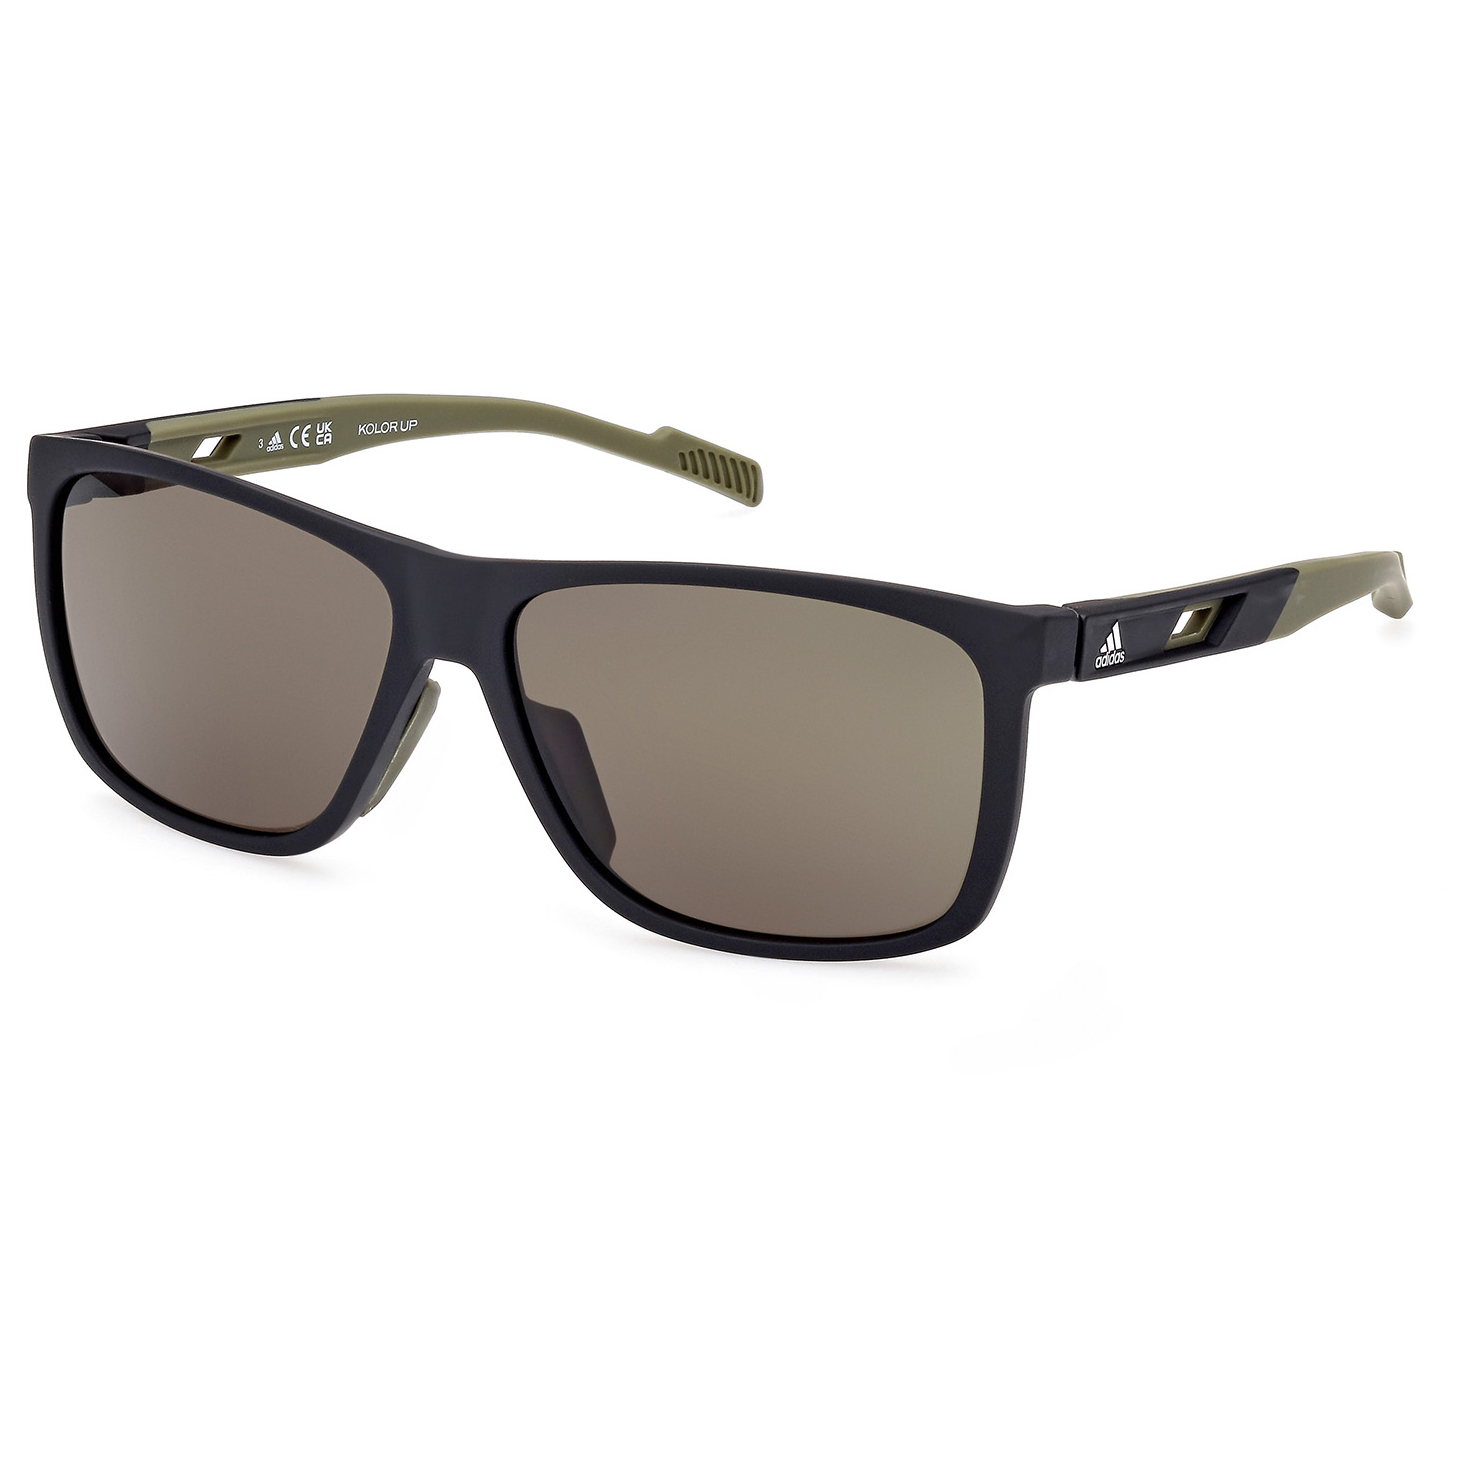 Солнцезащитные очки Adidas SP0067 Cat 3, матовый черный